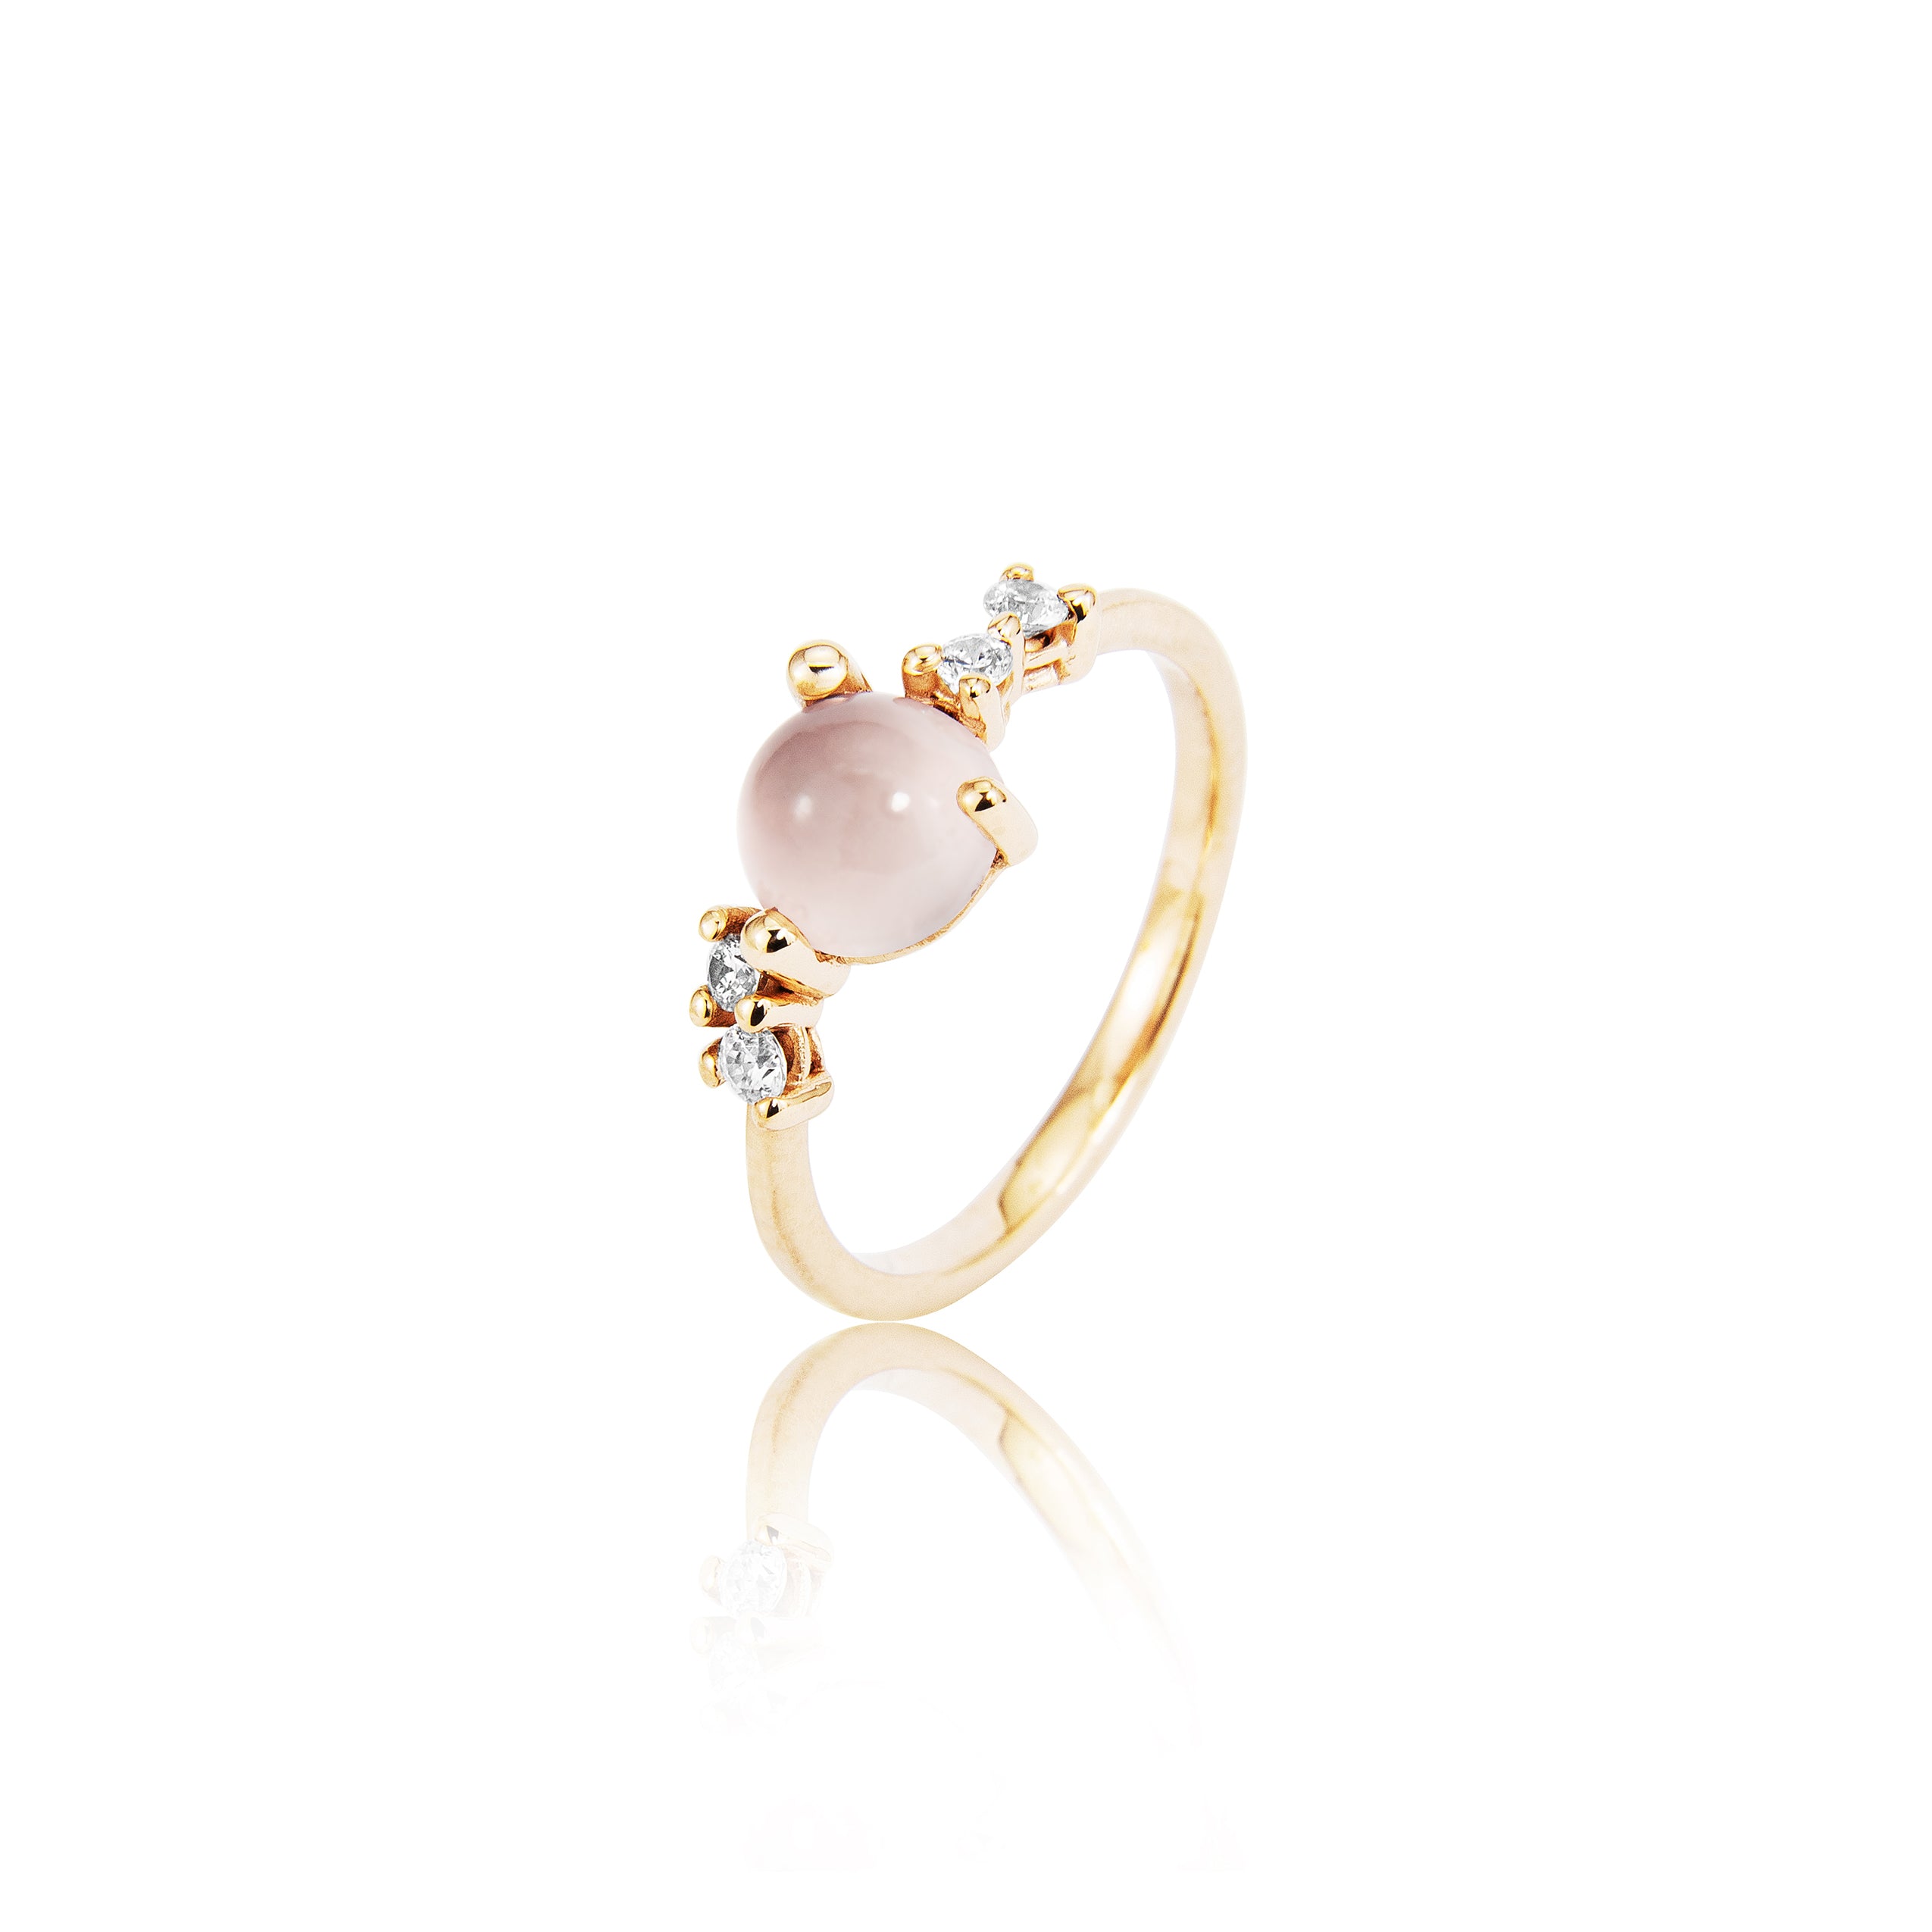 Stellini ring "medium" in 585/- gold with pink quartz